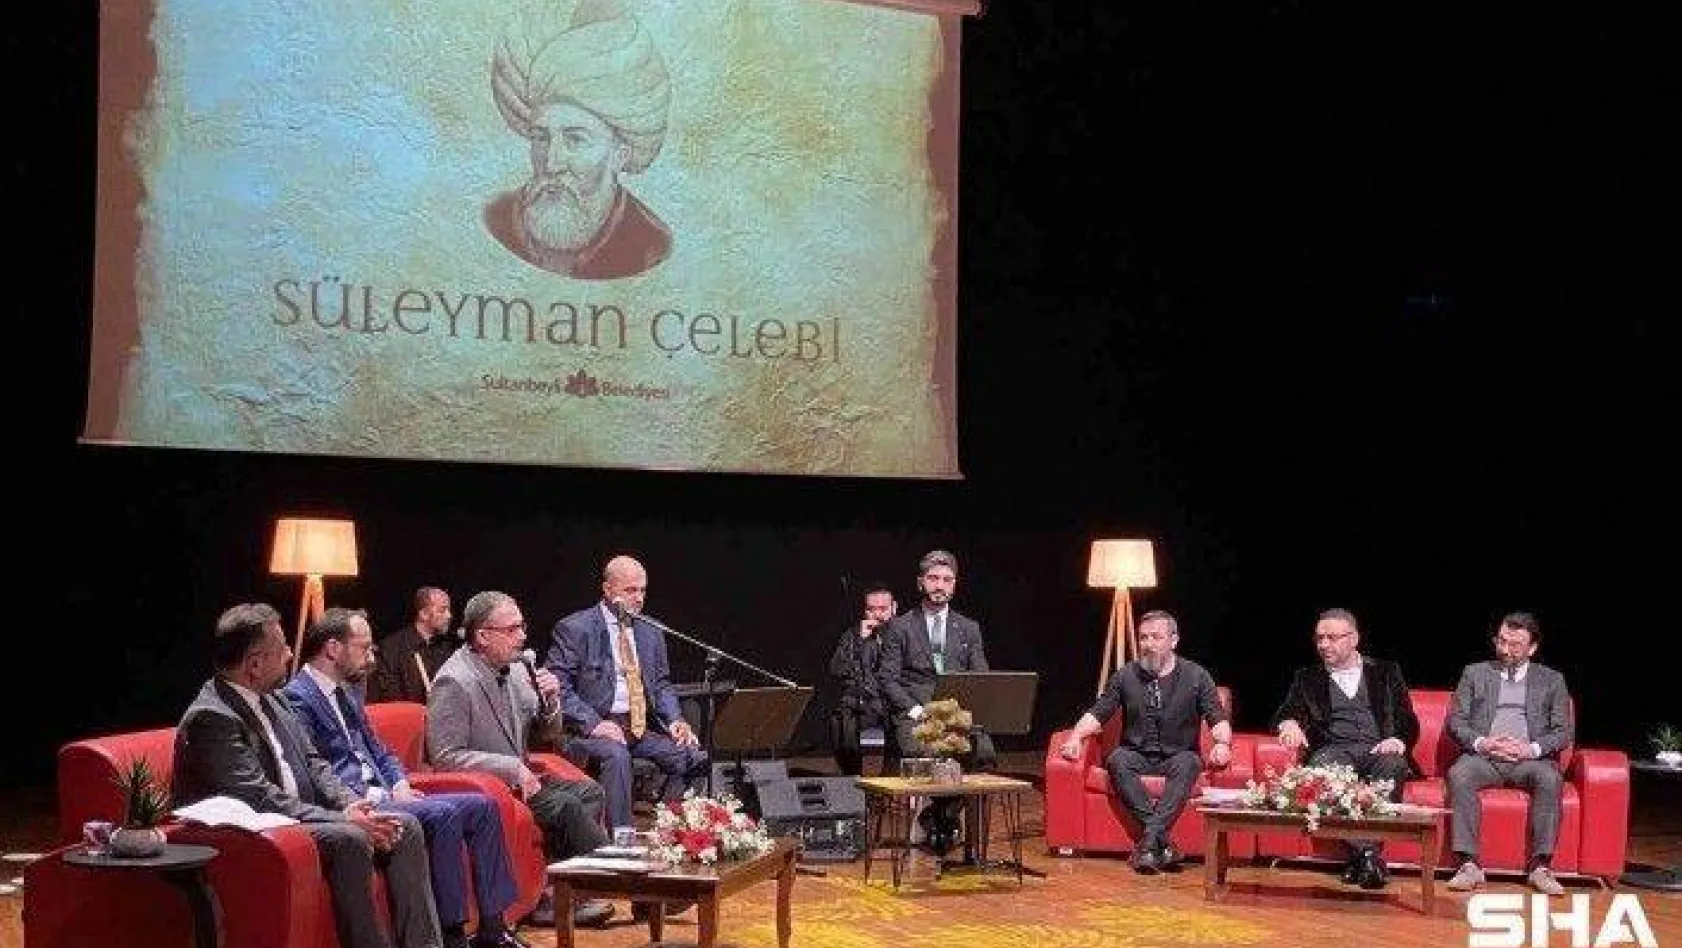 Süleyman Çelebi Yılında Sultanbeyli'de 'Vesiletü'n Necat' programı